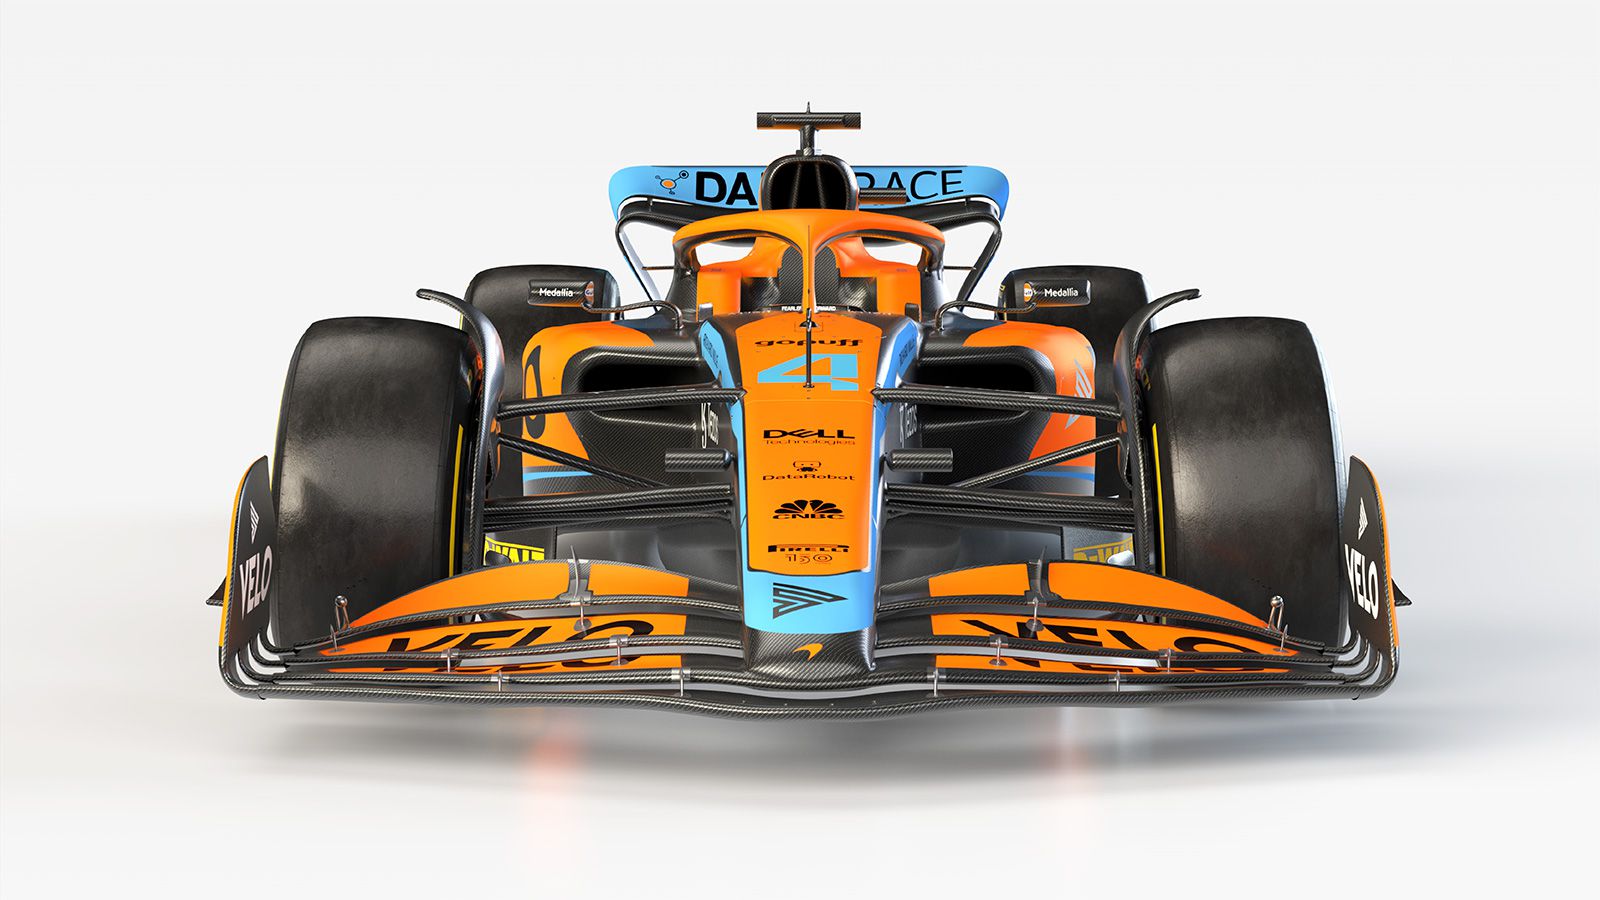 Une livrée dans la tradition © McLaren F1